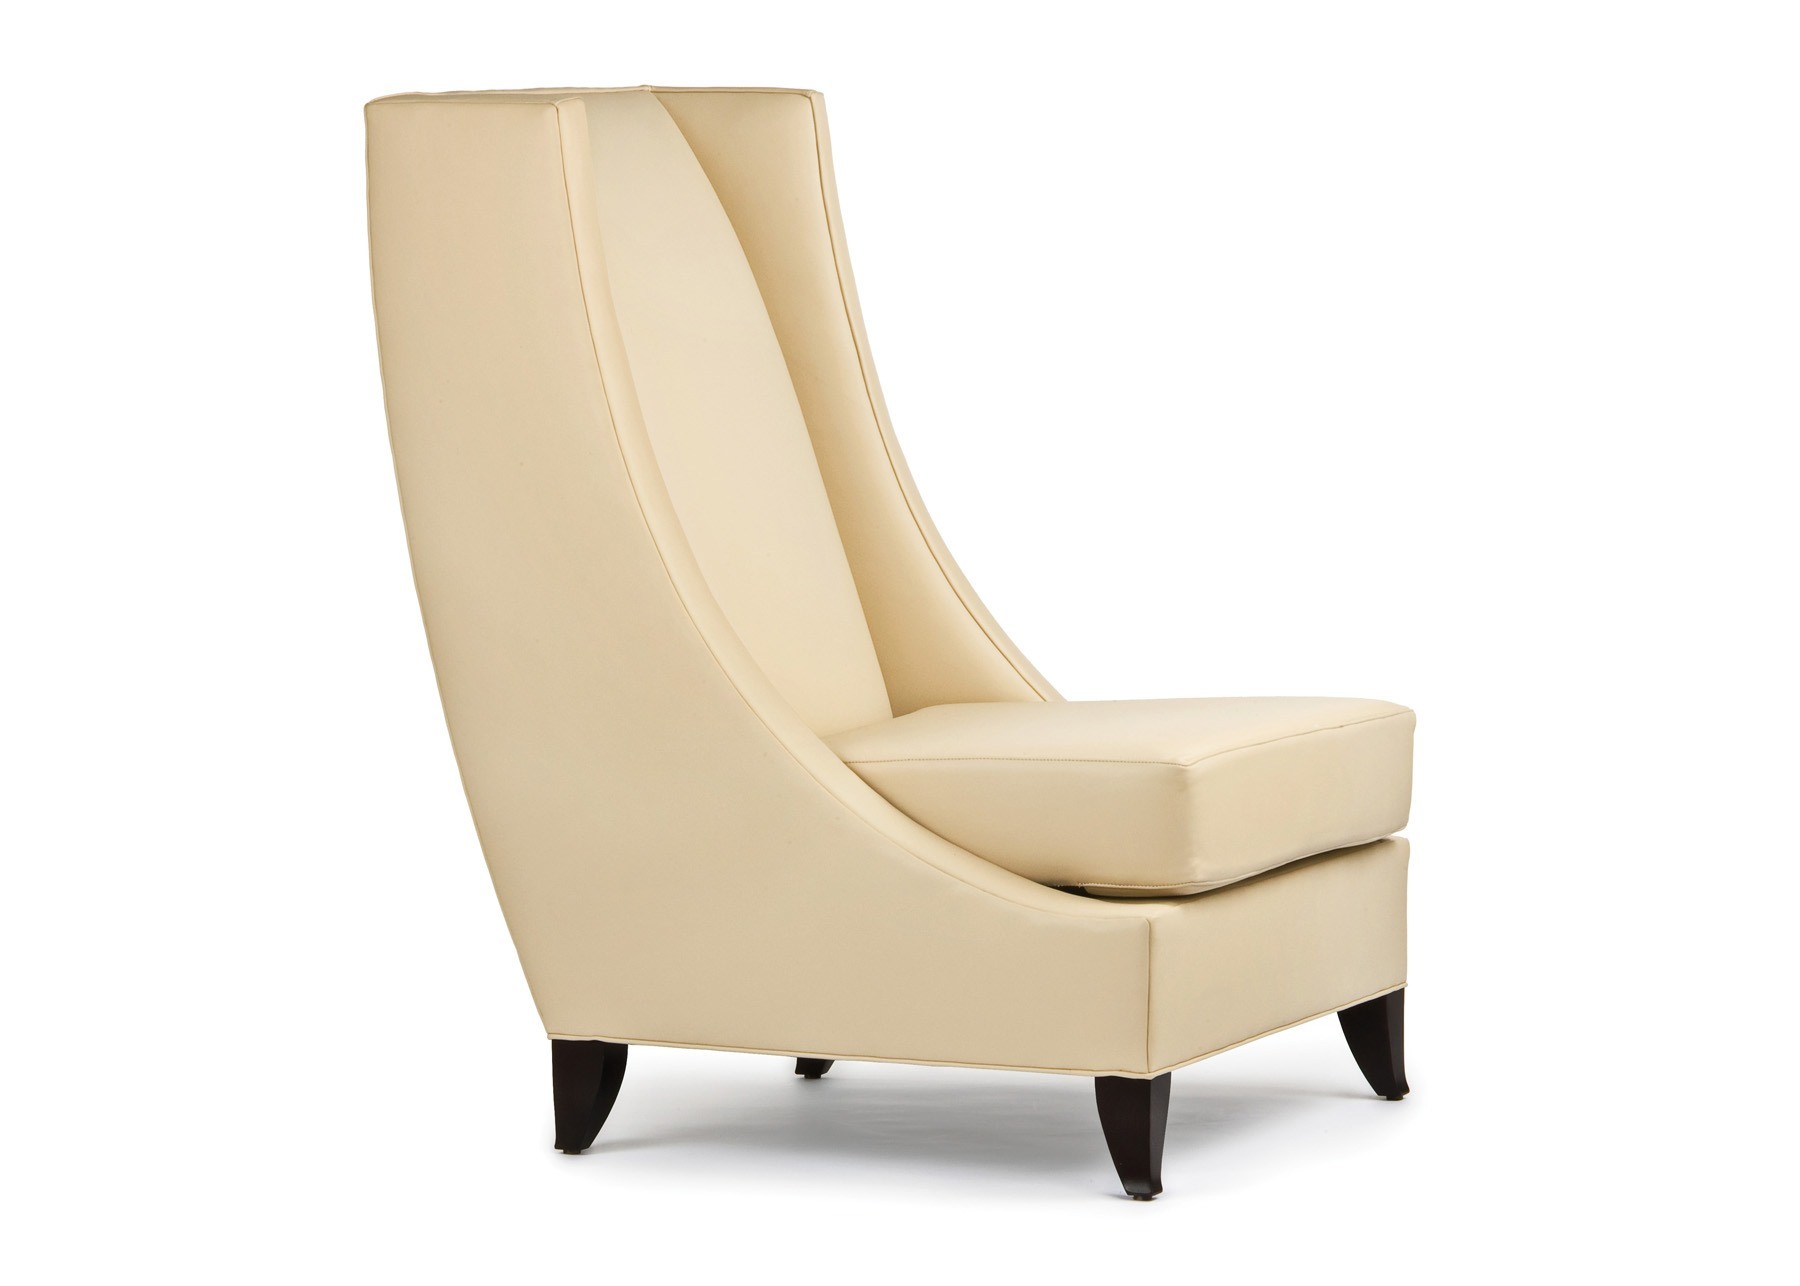 Cabot Wrenn Diego Armless Lounge Chair